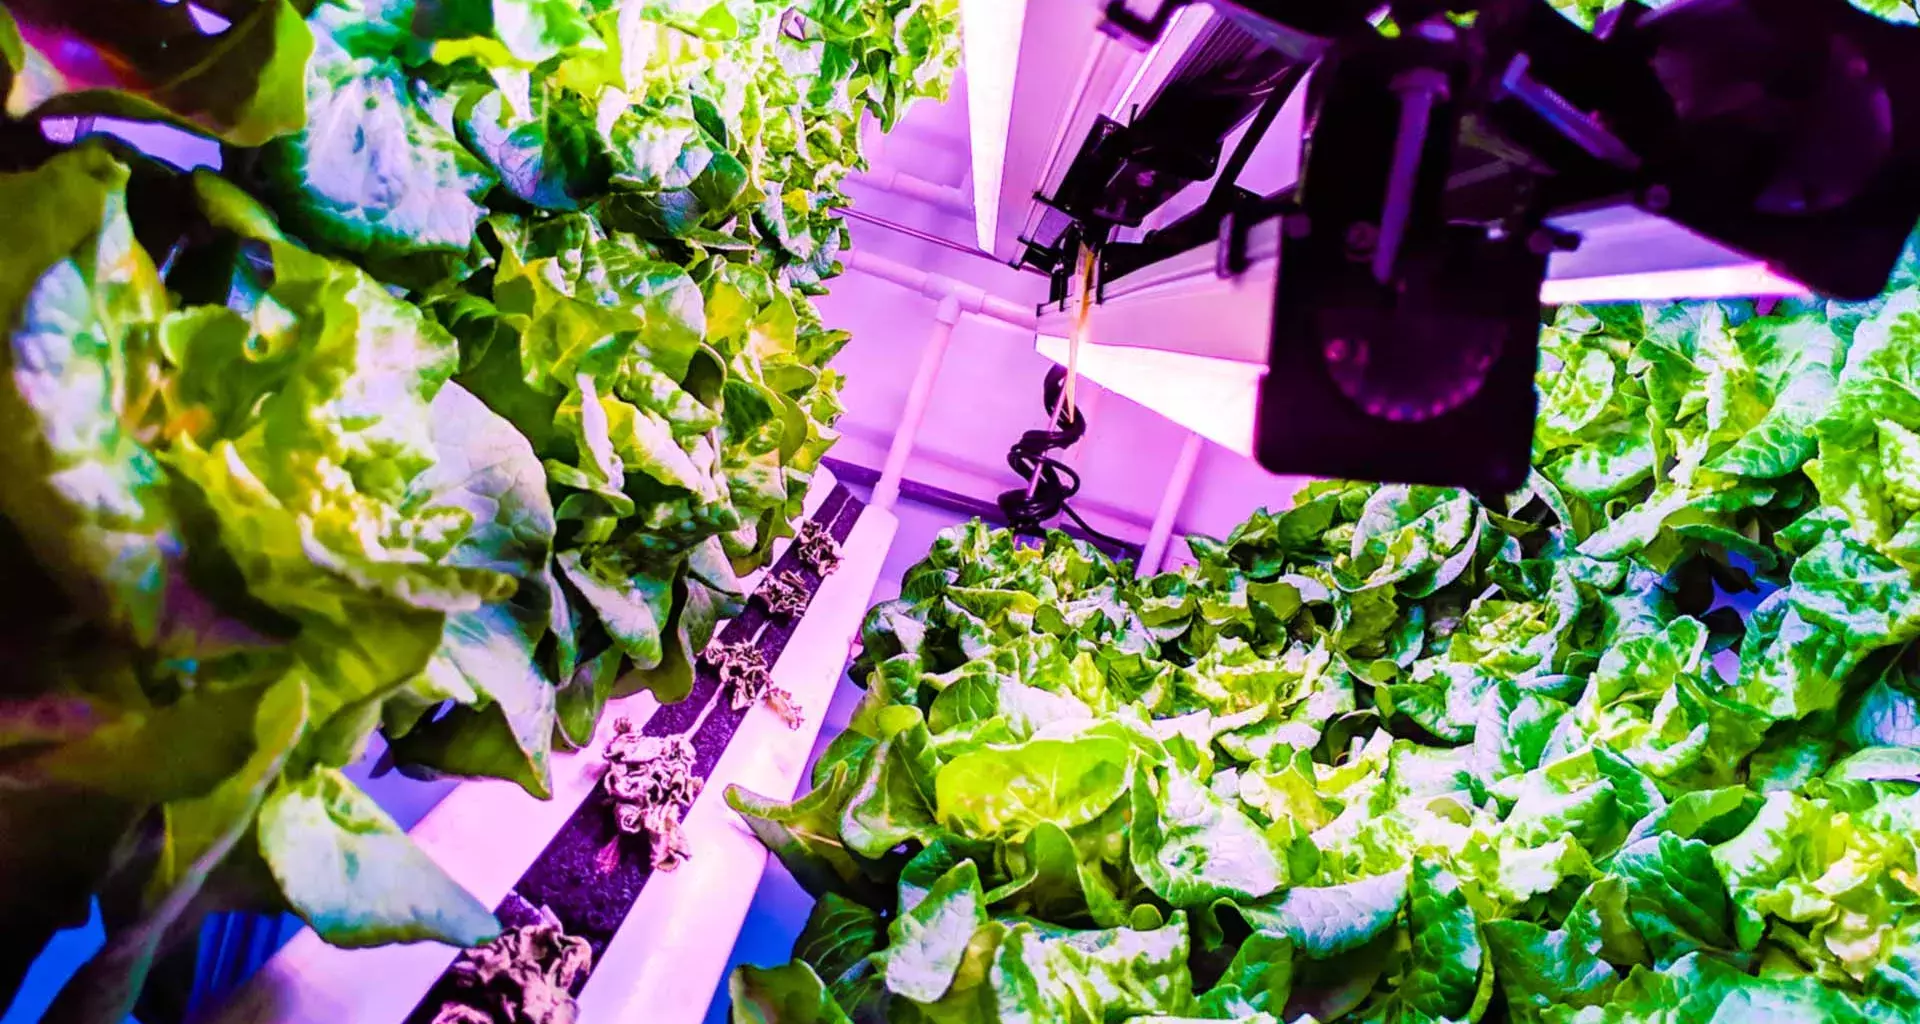 Verde Compacto es una empresa de agricultura vertical creada por egresados del Tec de Monterrey